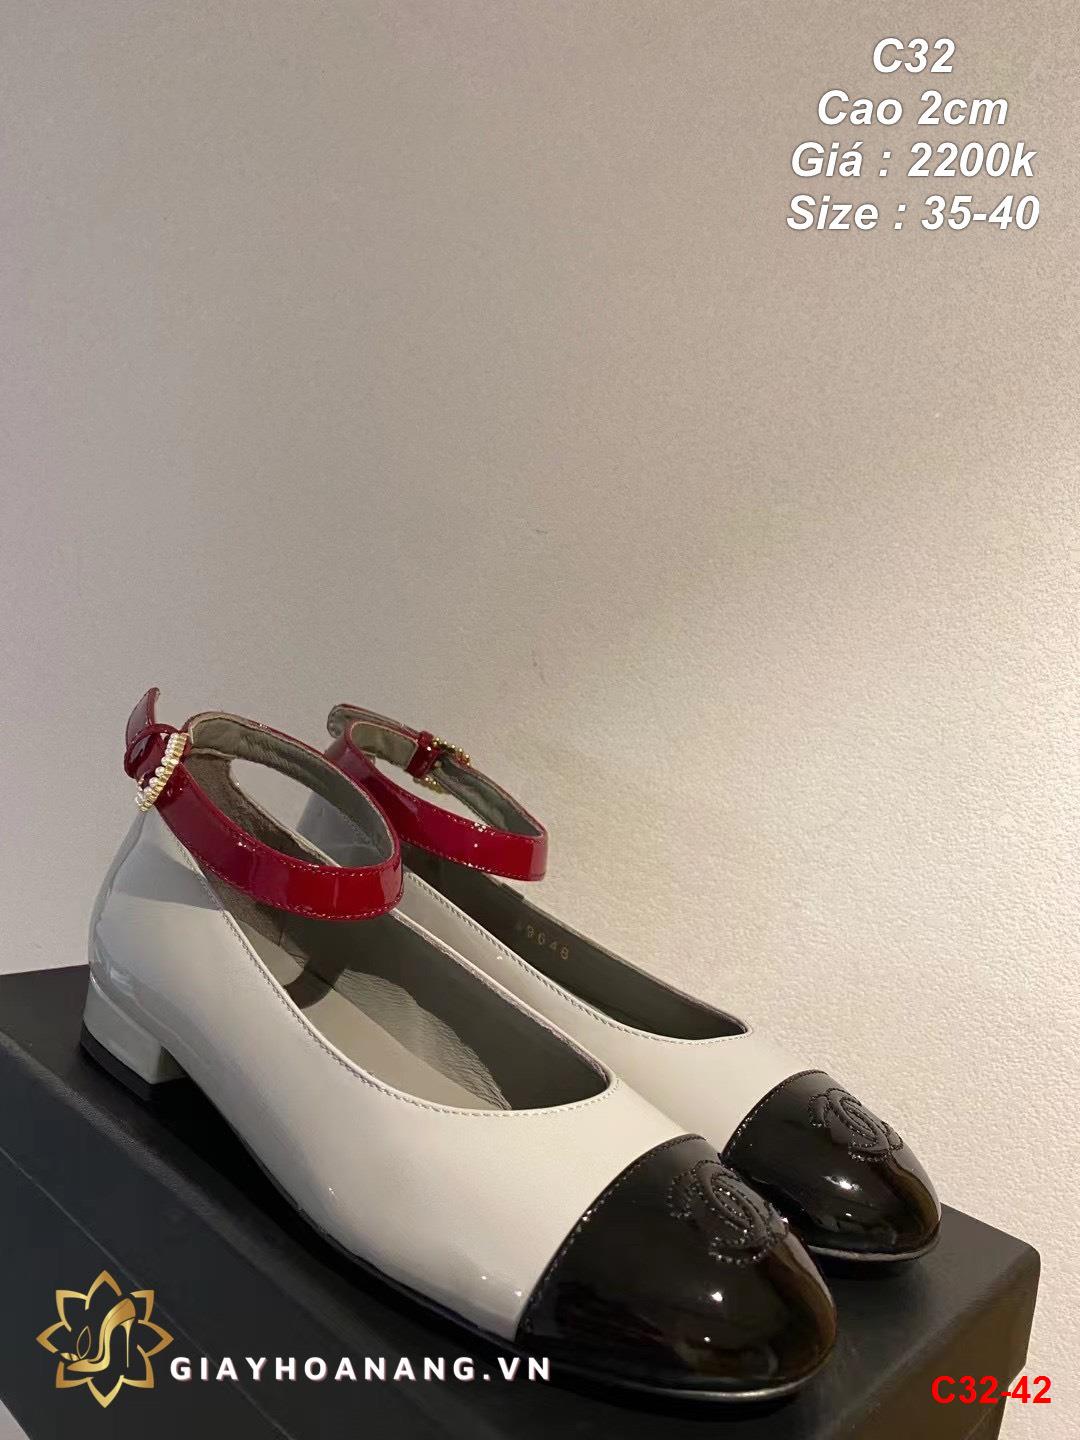 C32-42 Chanel giày cao 2cm siêu cấp